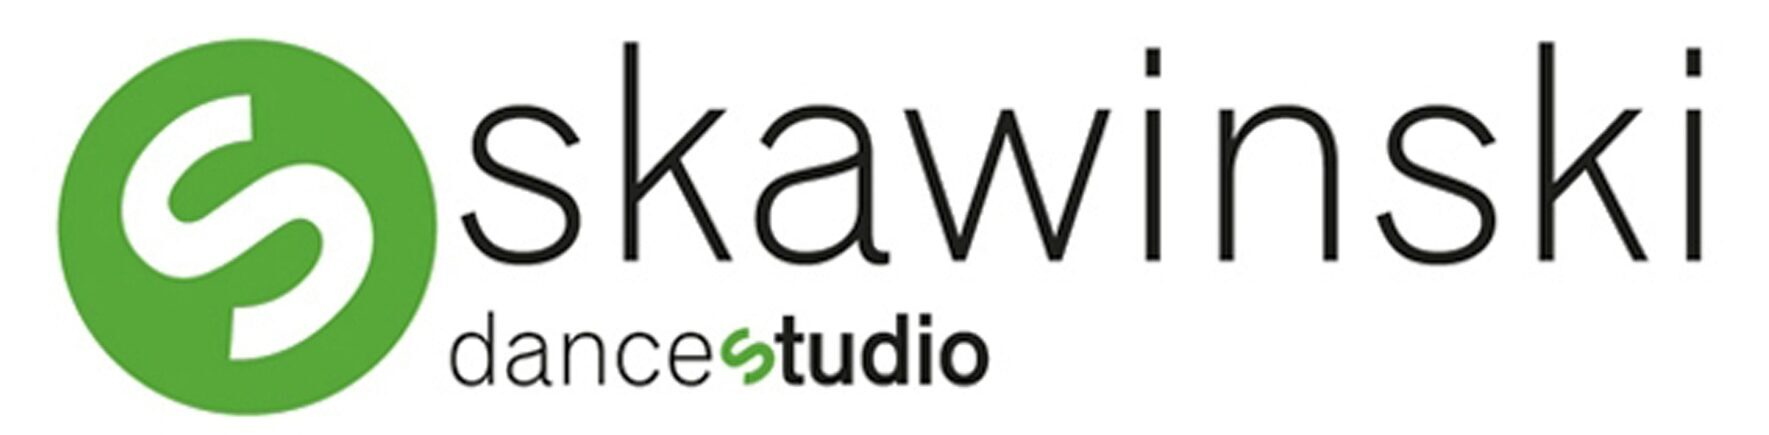 Skawinski_Dance_Studio